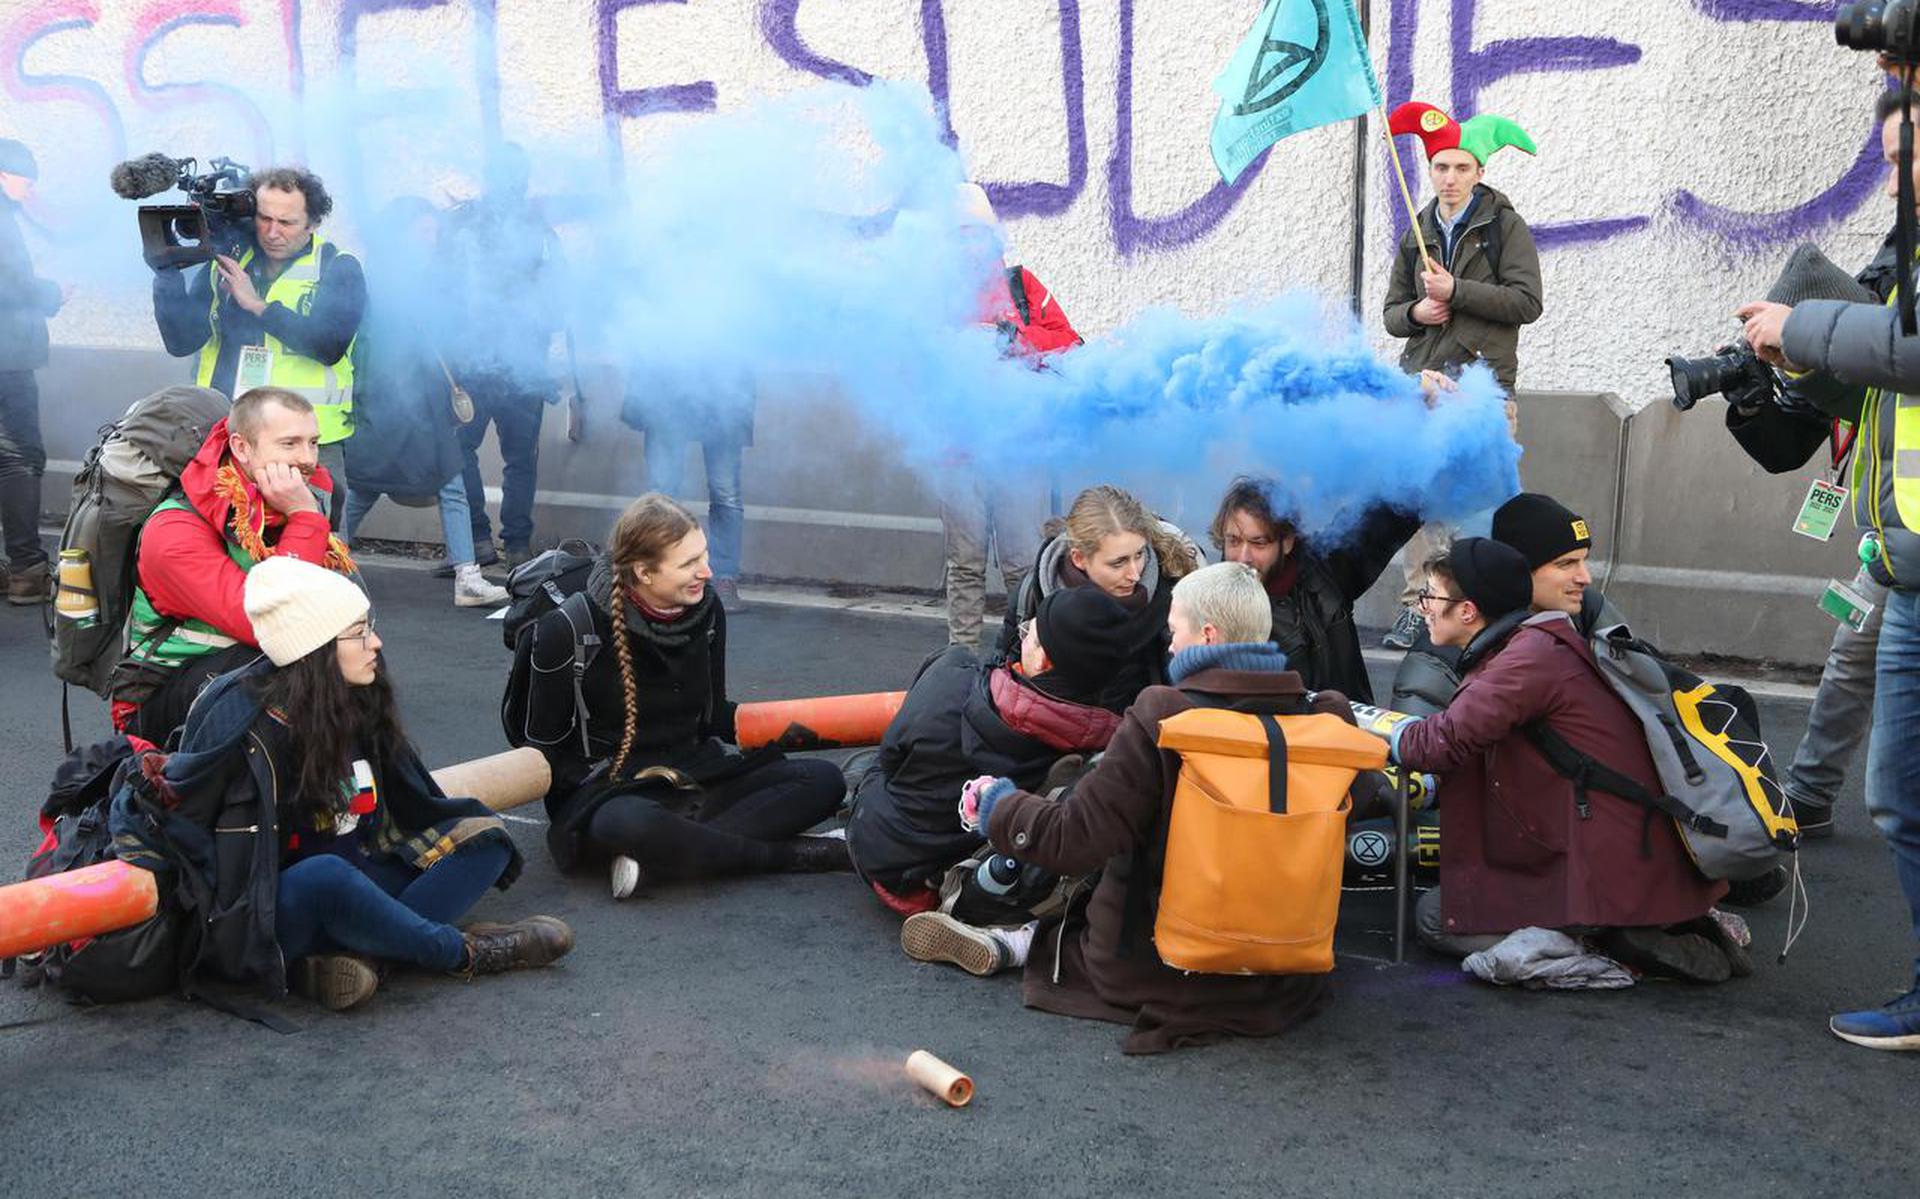 Demonstranten hebben zich op verschillende manieren aan elkaar en aan de weg vastgemaakt uit protest tegen de miljarden die Nederland uitgeeft aan subsidies voor producenten van fossiele brandstoffen.